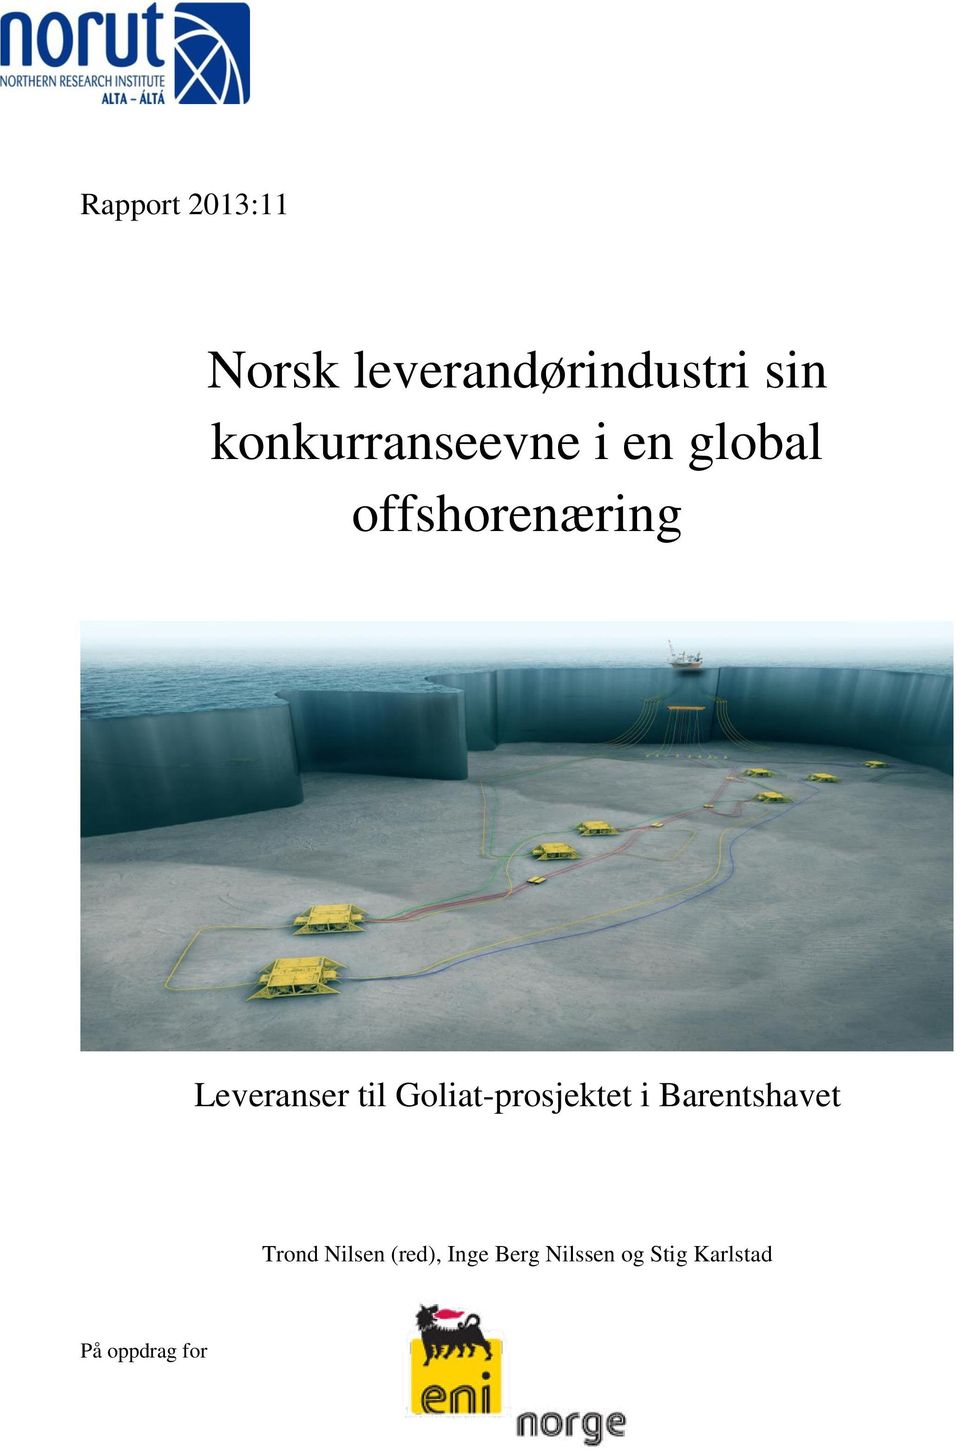 Leveranser til Goliat-prosjektet i Barentshavet